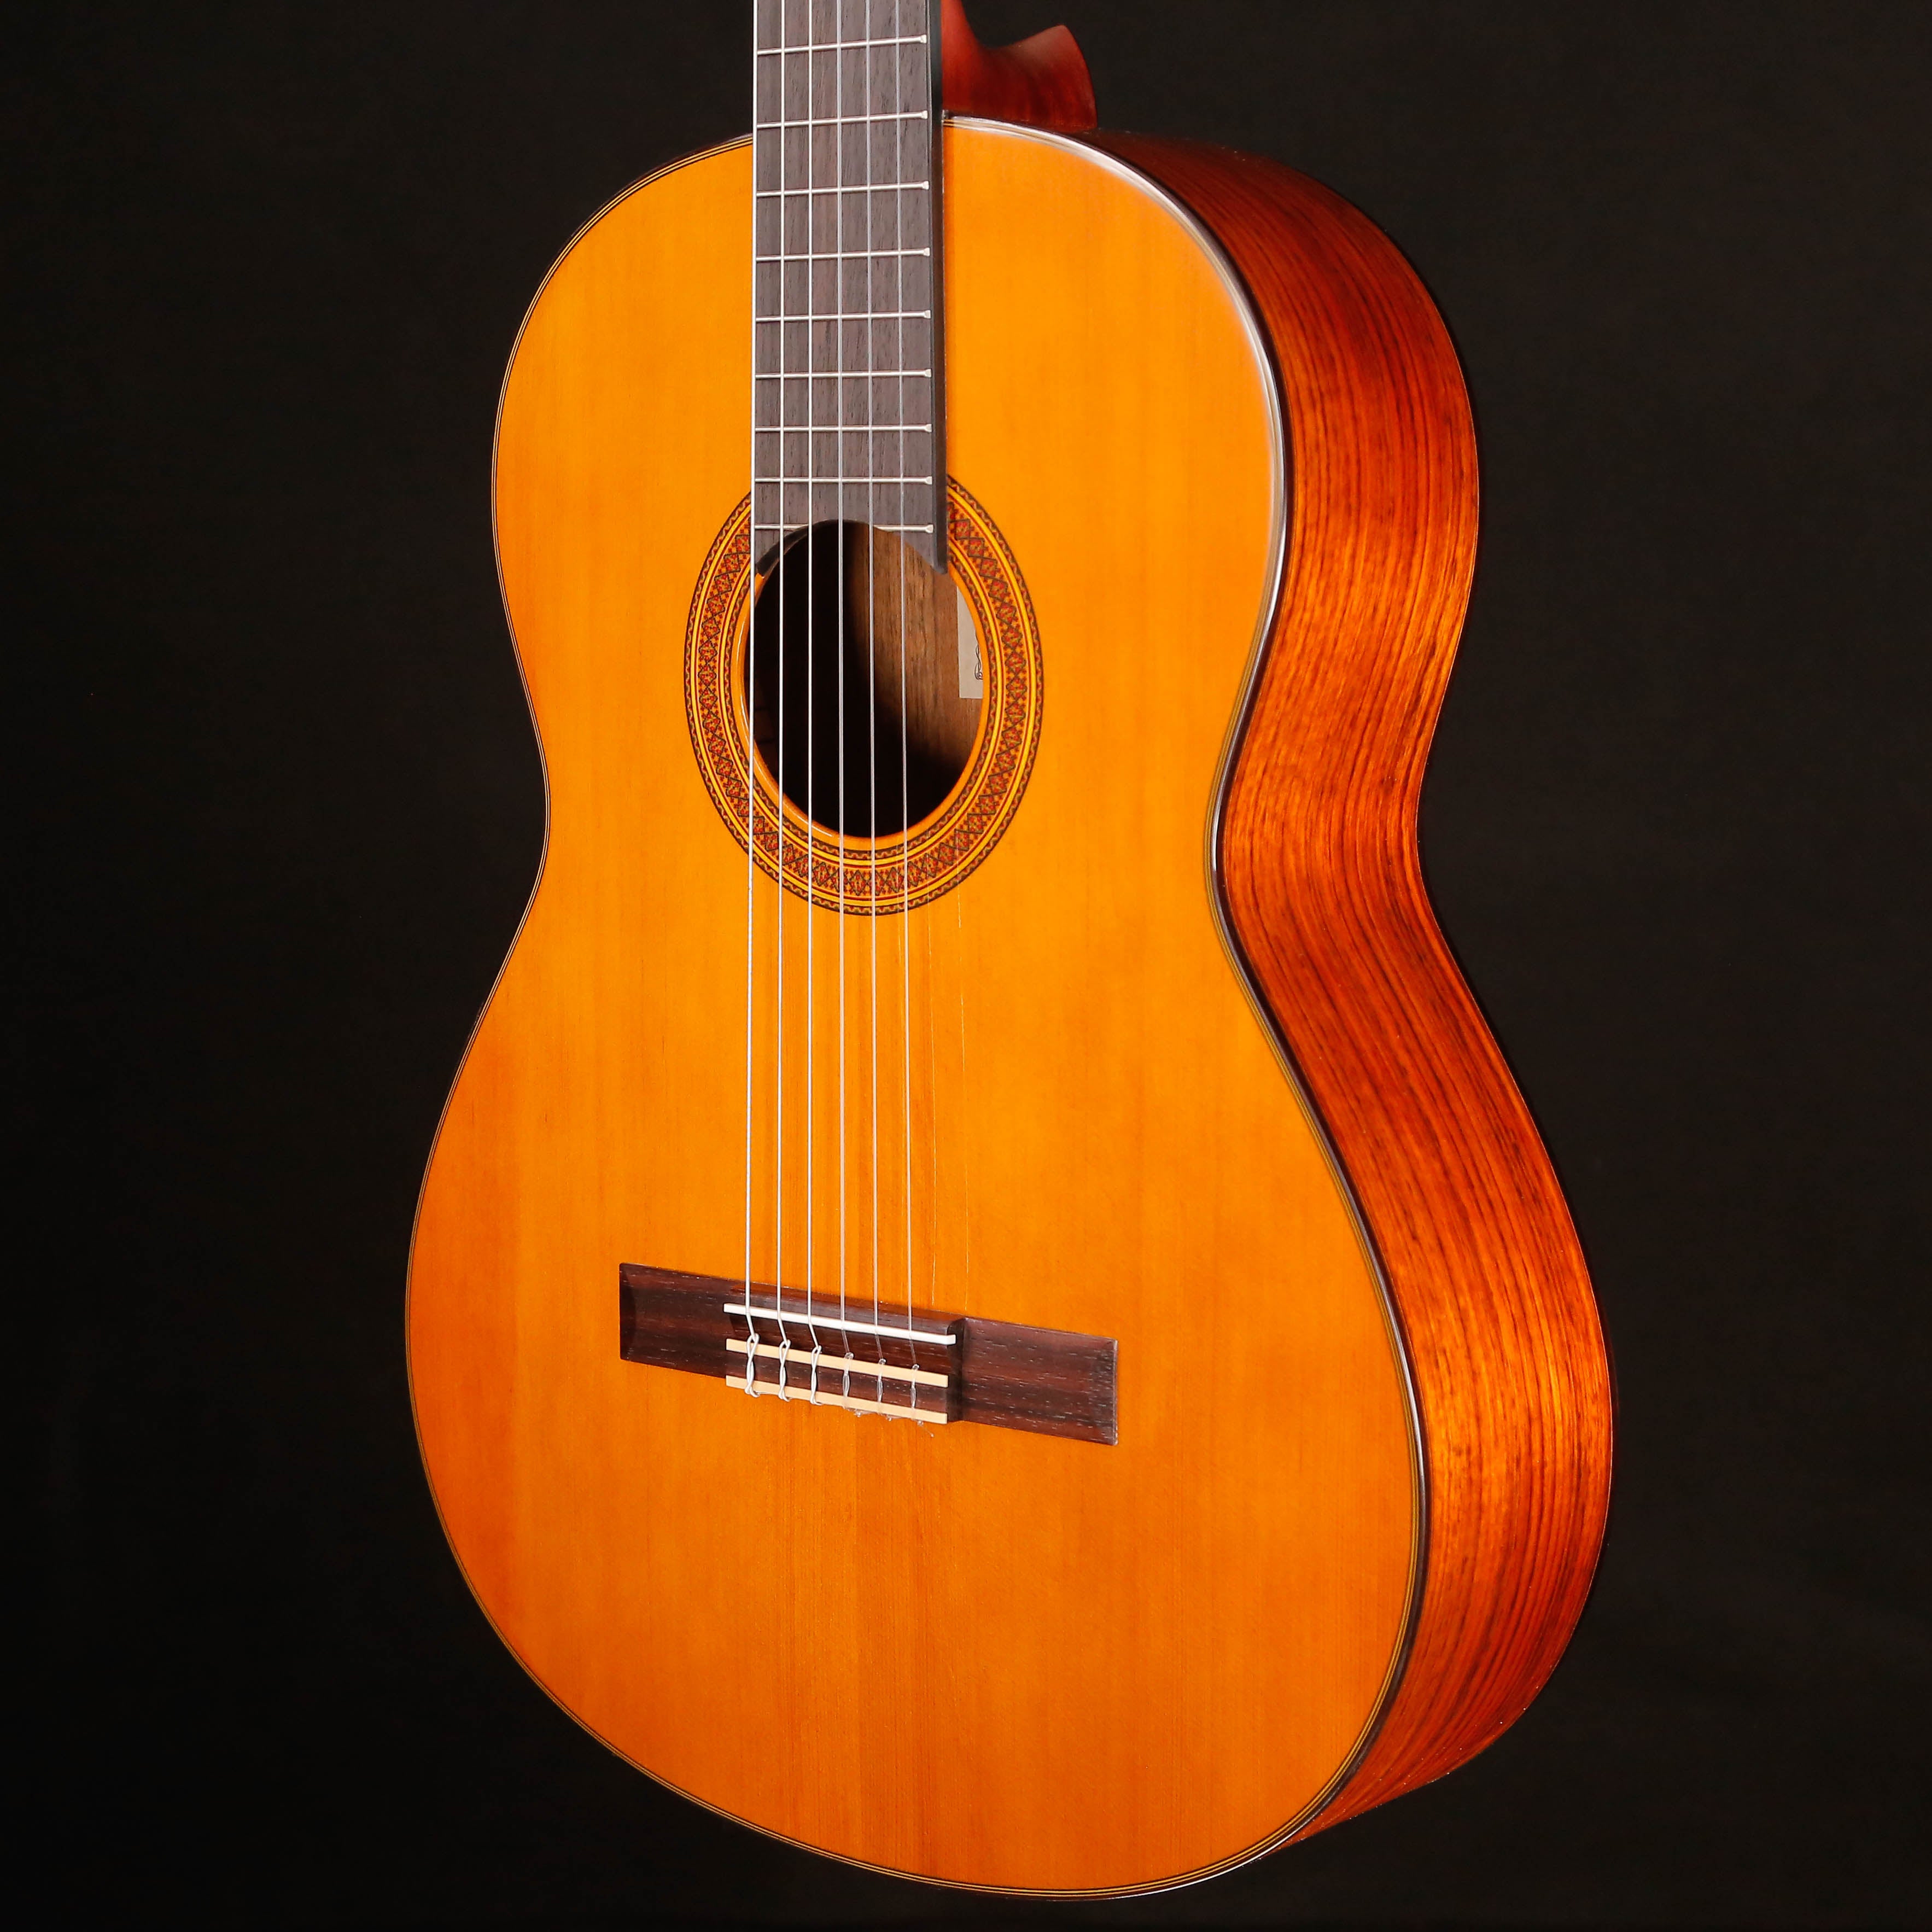 Yamaha CG162C Classical Guitar, Cedar Top